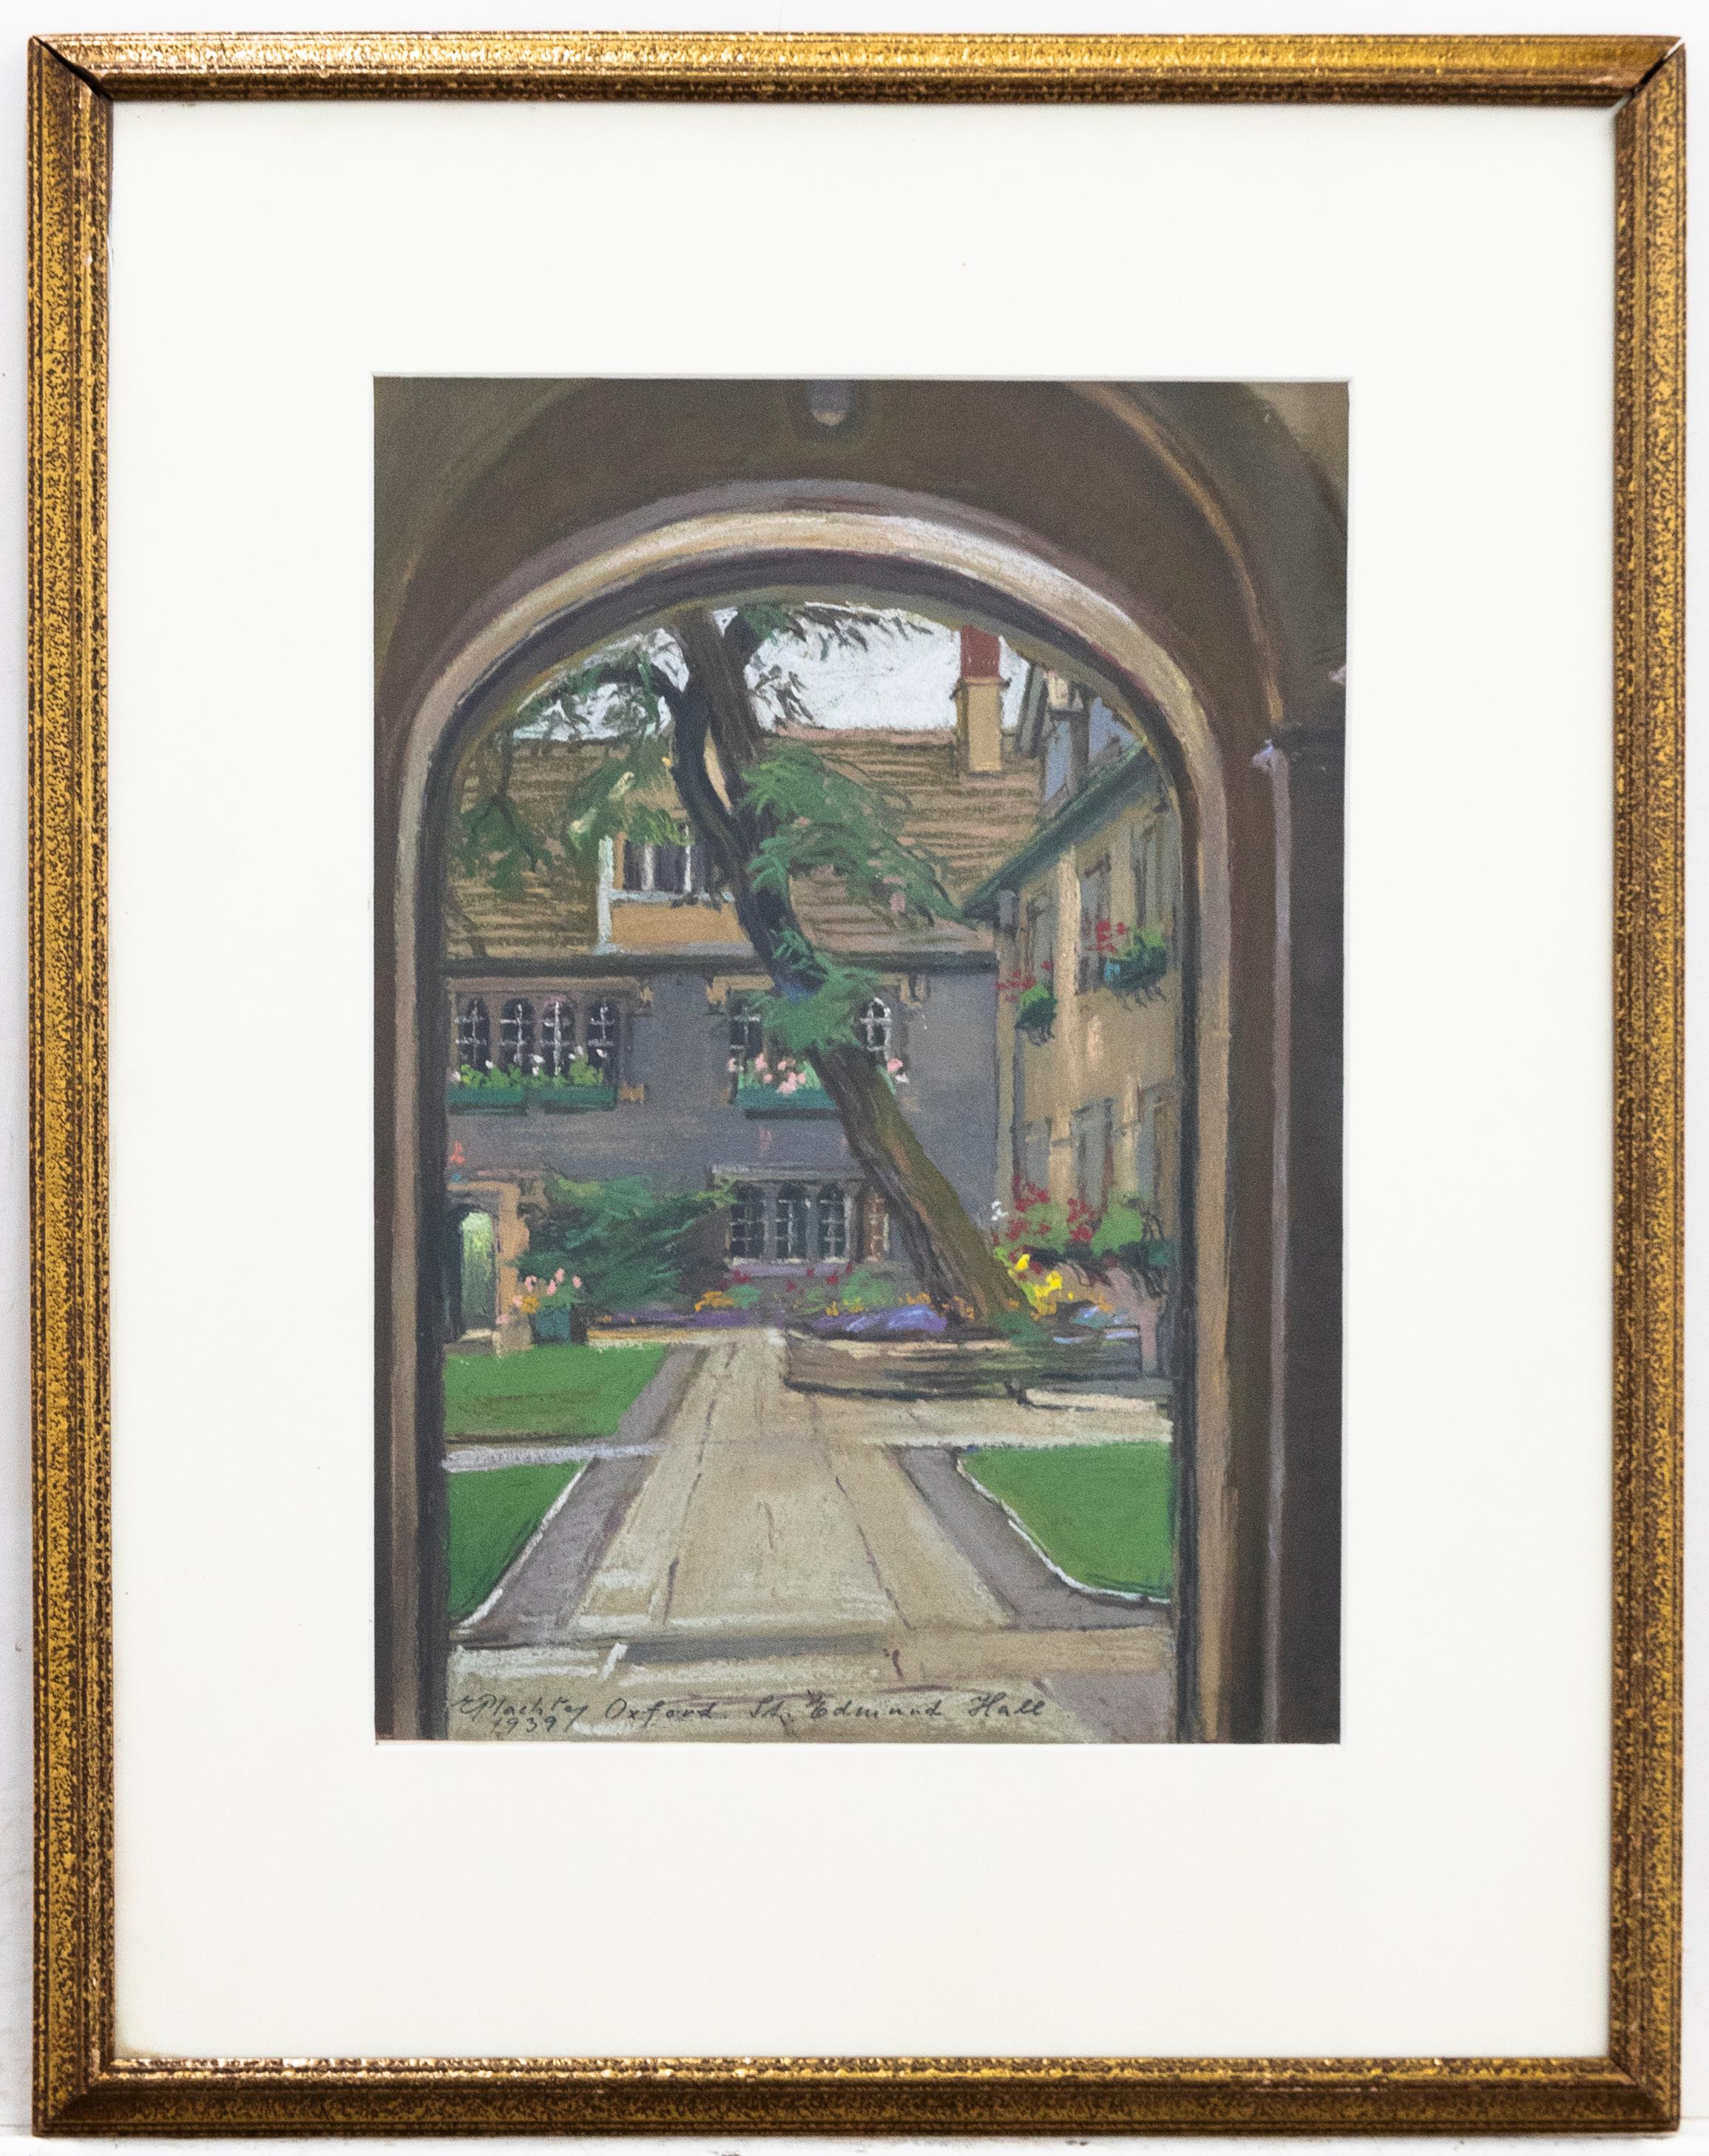 Unknown Landscape Art - Framed 1939 Pastel - Edmund Hall, Oxford